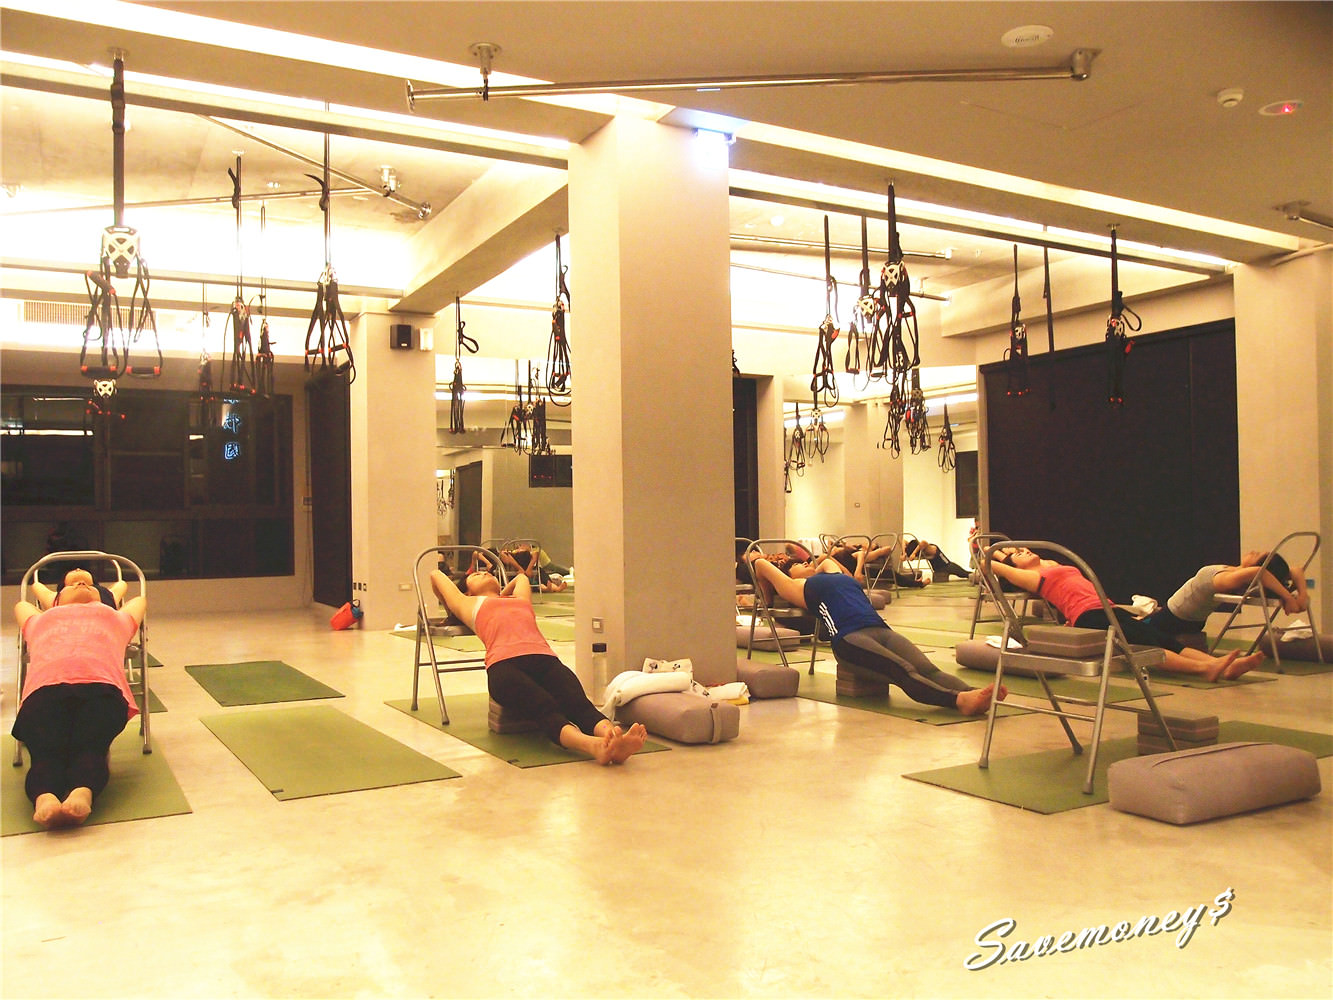 【課程體驗】台中最美的瑜珈會館Core Yoga~椅子瑜珈試上心得